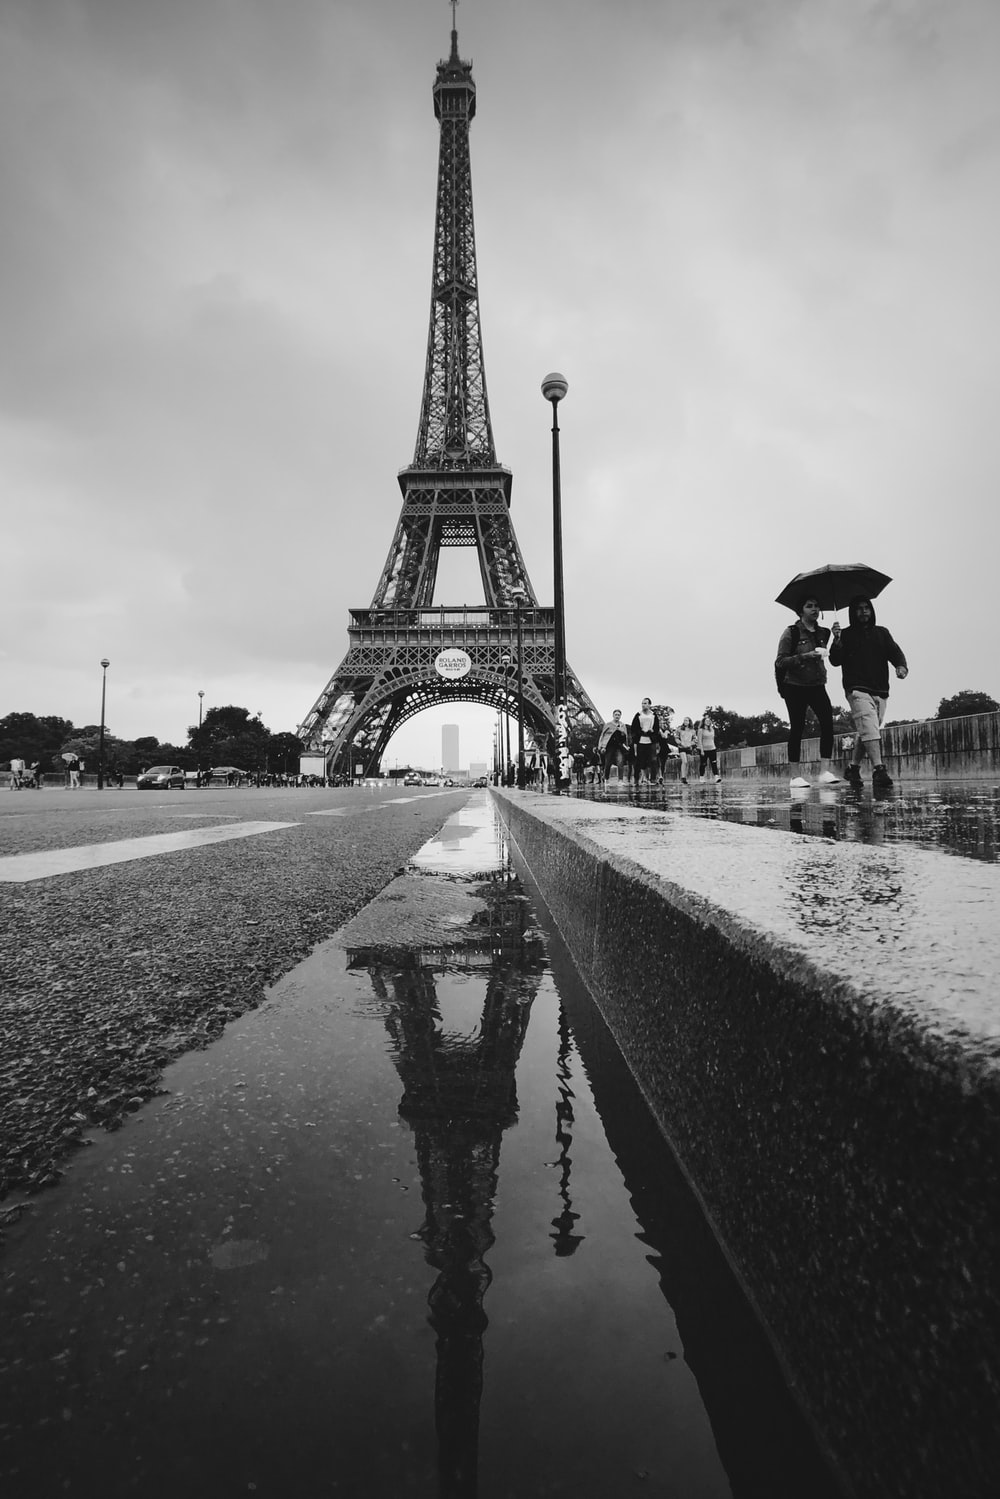 Rainy Paris Live Wallpapers